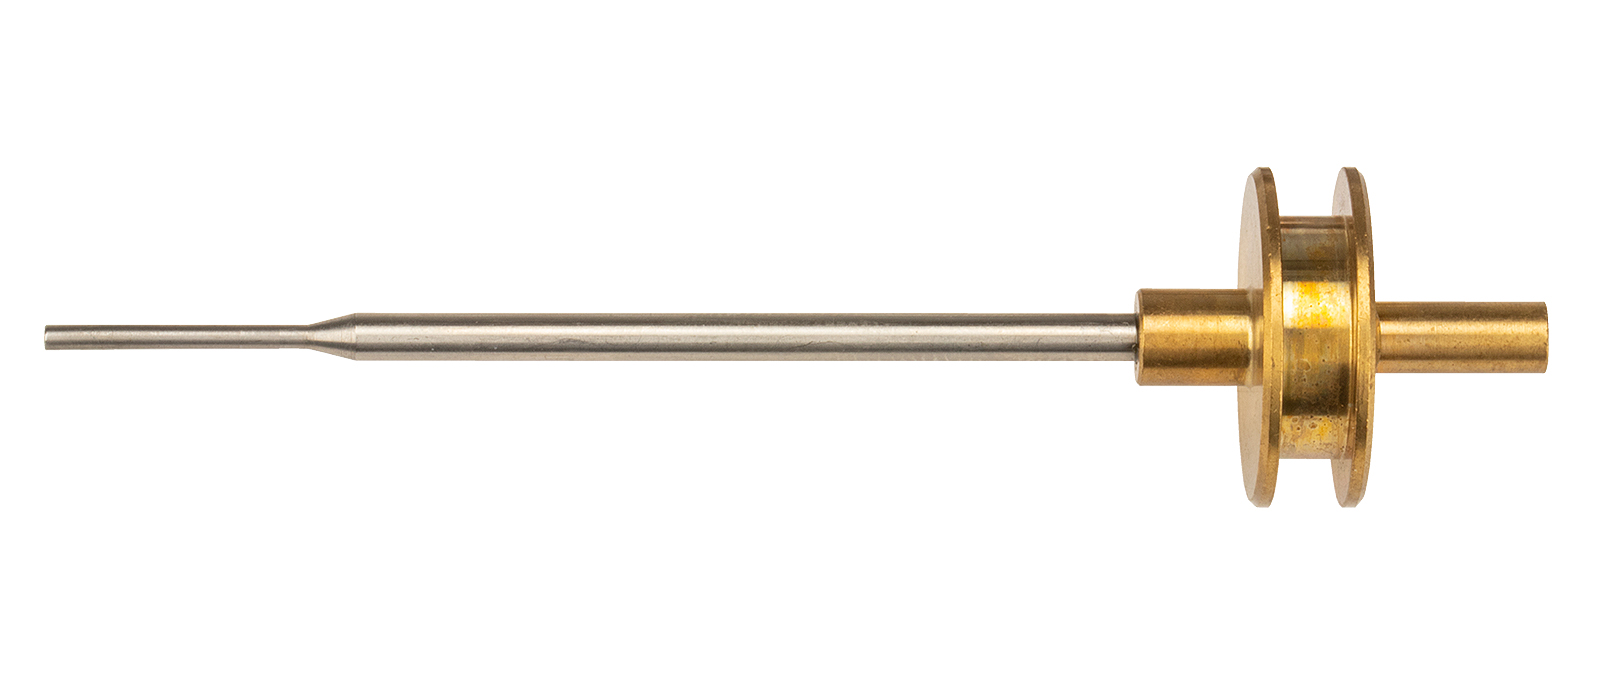 Valve needle with piston